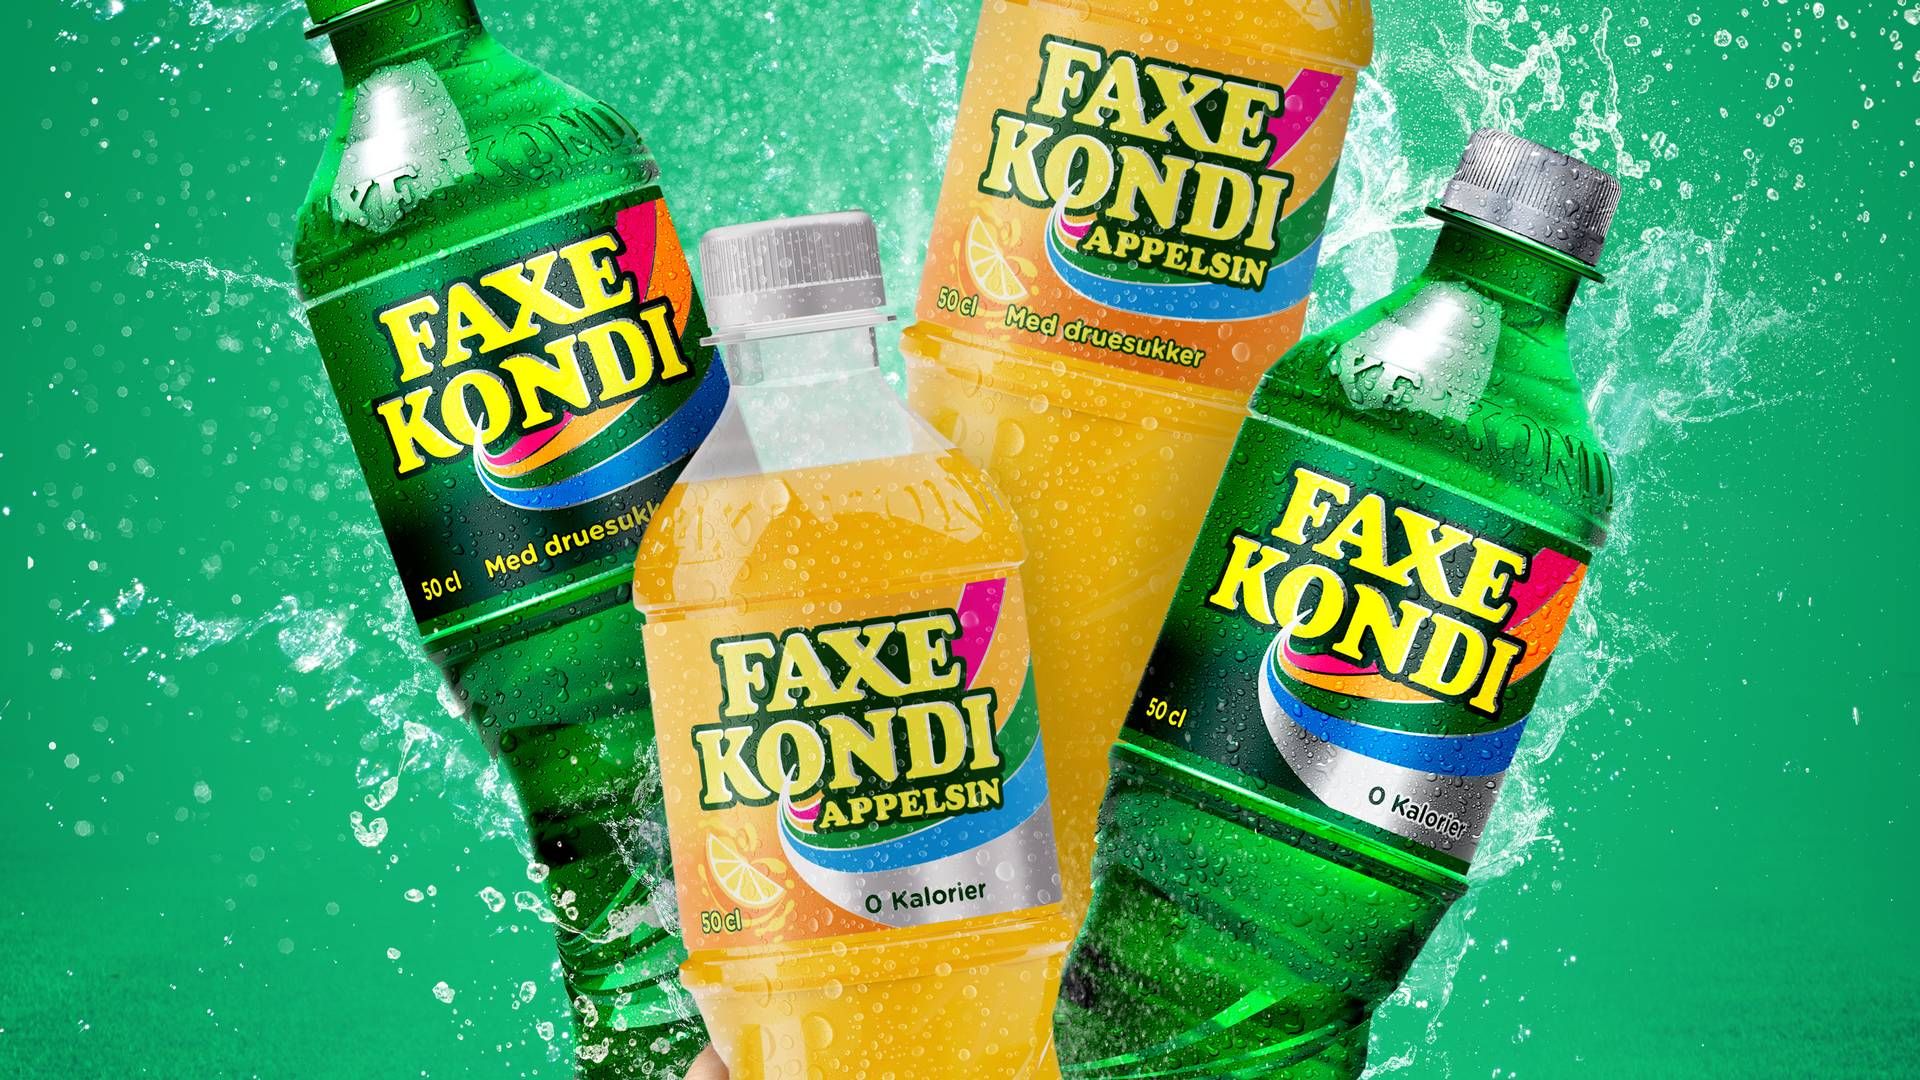 Når Faxe Kondi lancerer nye sodavand, er det med de sukkerholdige udgaver i baggrunden. Faxe Kondi Appelsin blev lanceret i januar og sælges næsten kun i udgaven uden tilsat sukker. | Foto: Pr/ Royal Unibrew